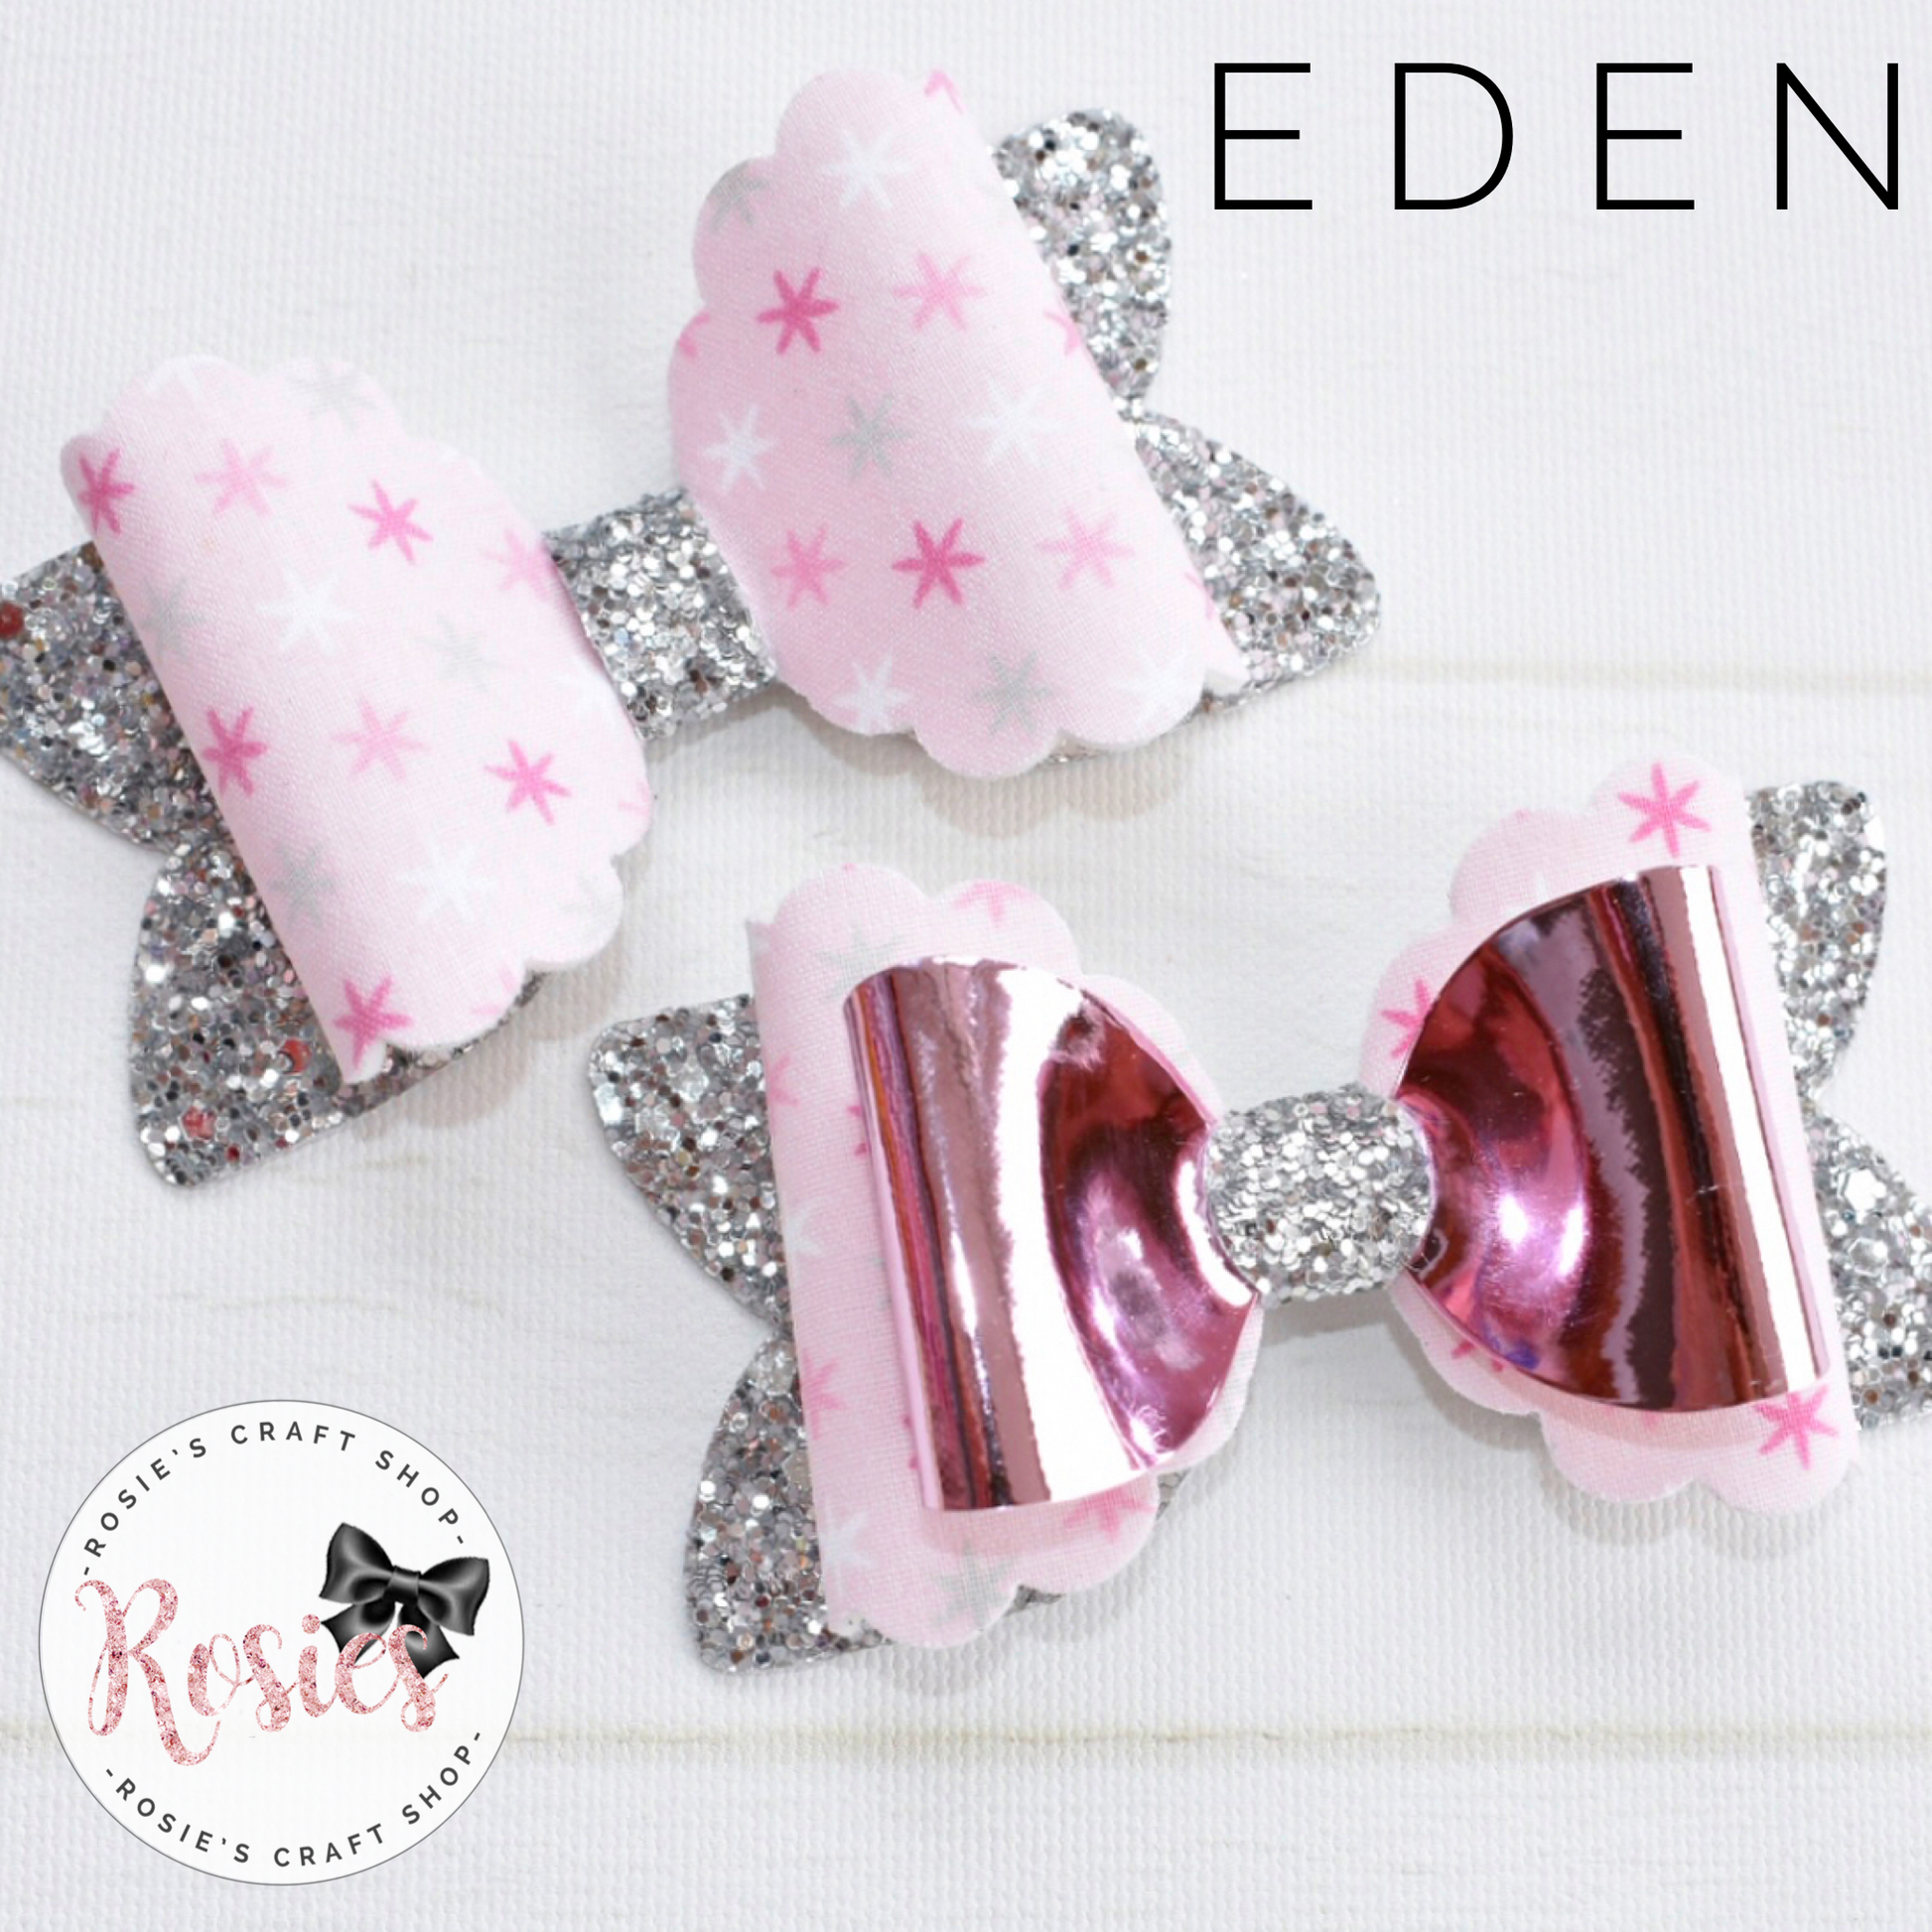 Eden Bow Plastic Template. - Rosie's Craft Shop Ltd